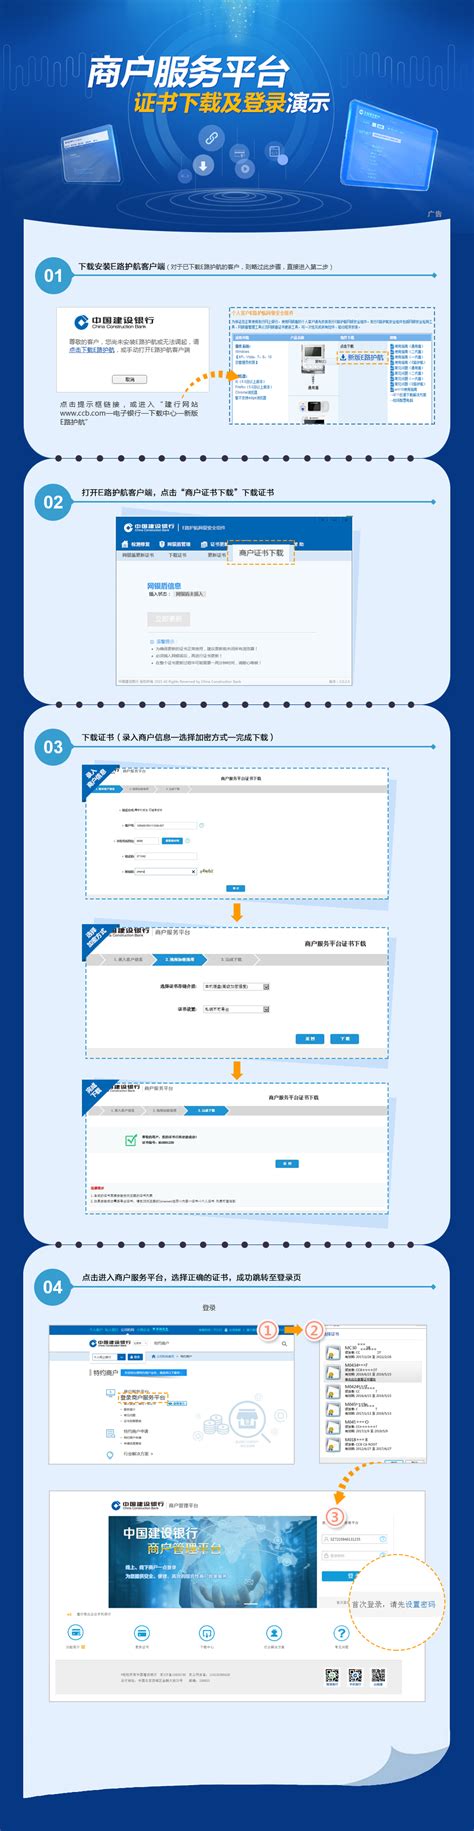 欢迎访问中国建设银行网站_商户服务平台证书下载及登录演示